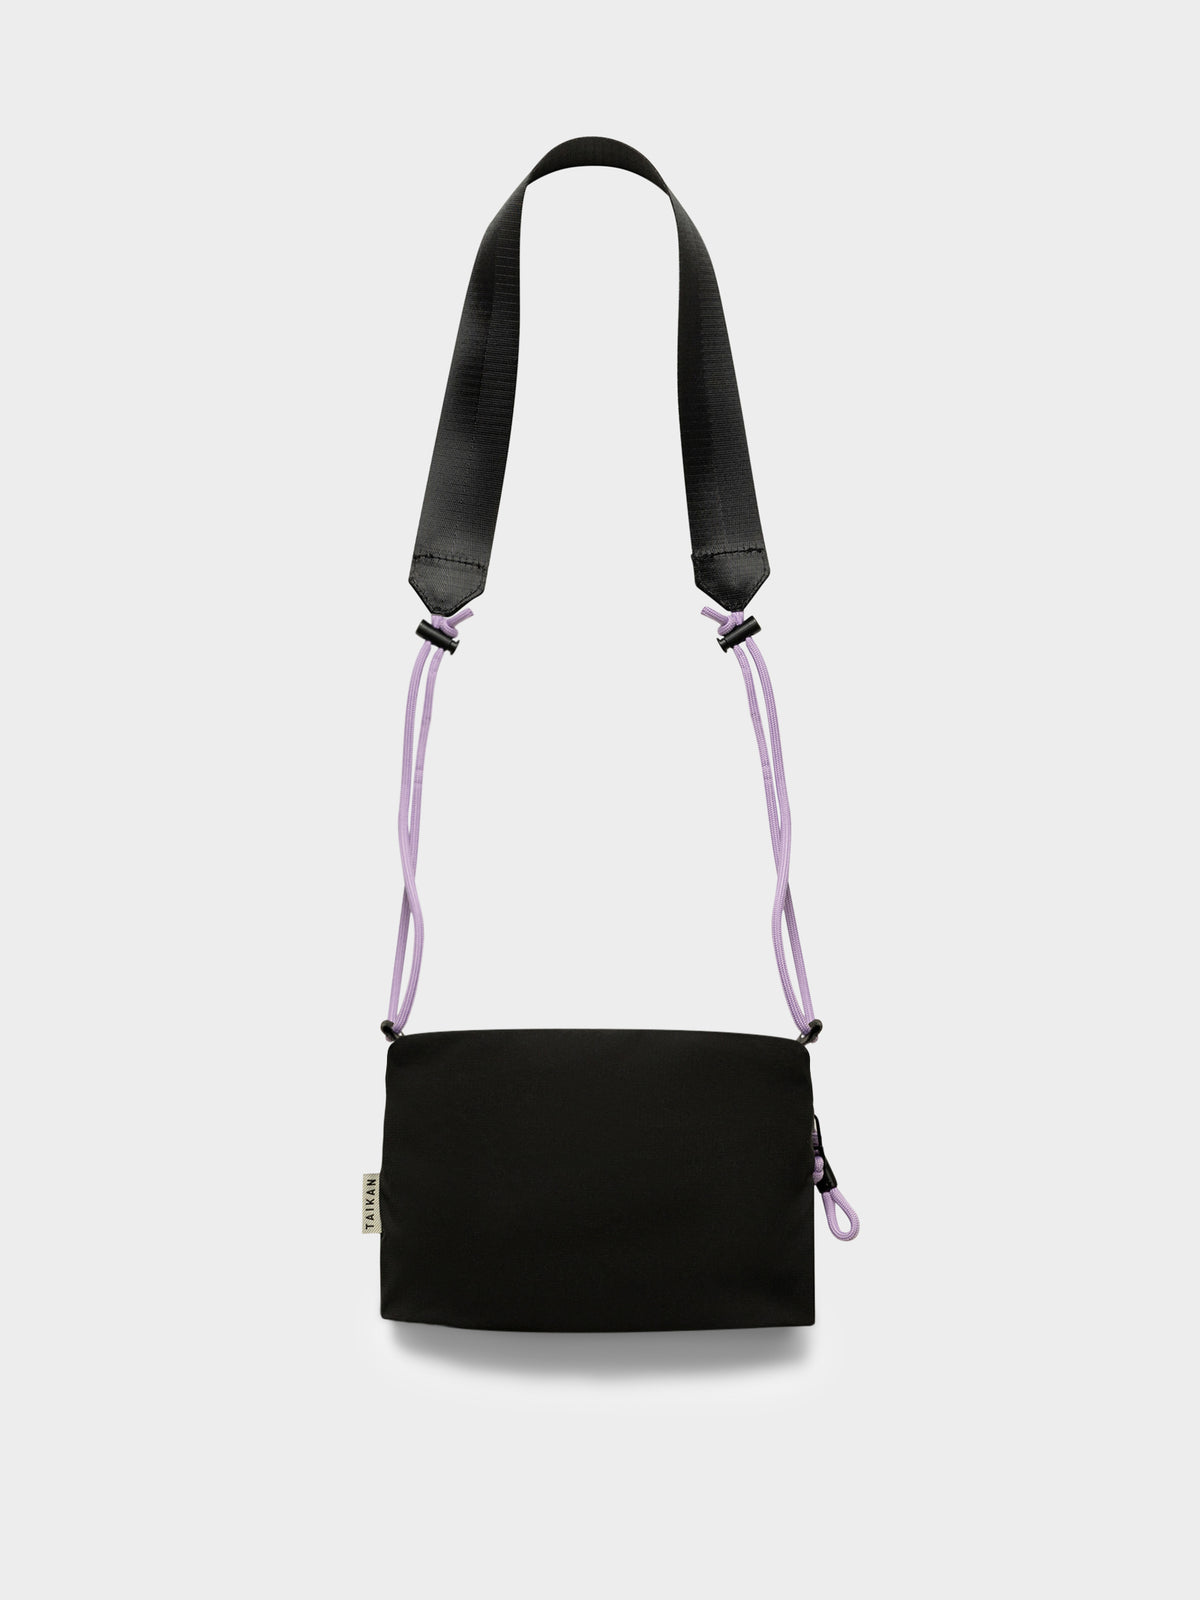 Sacoche Premium Small Bag in Black Ripstop